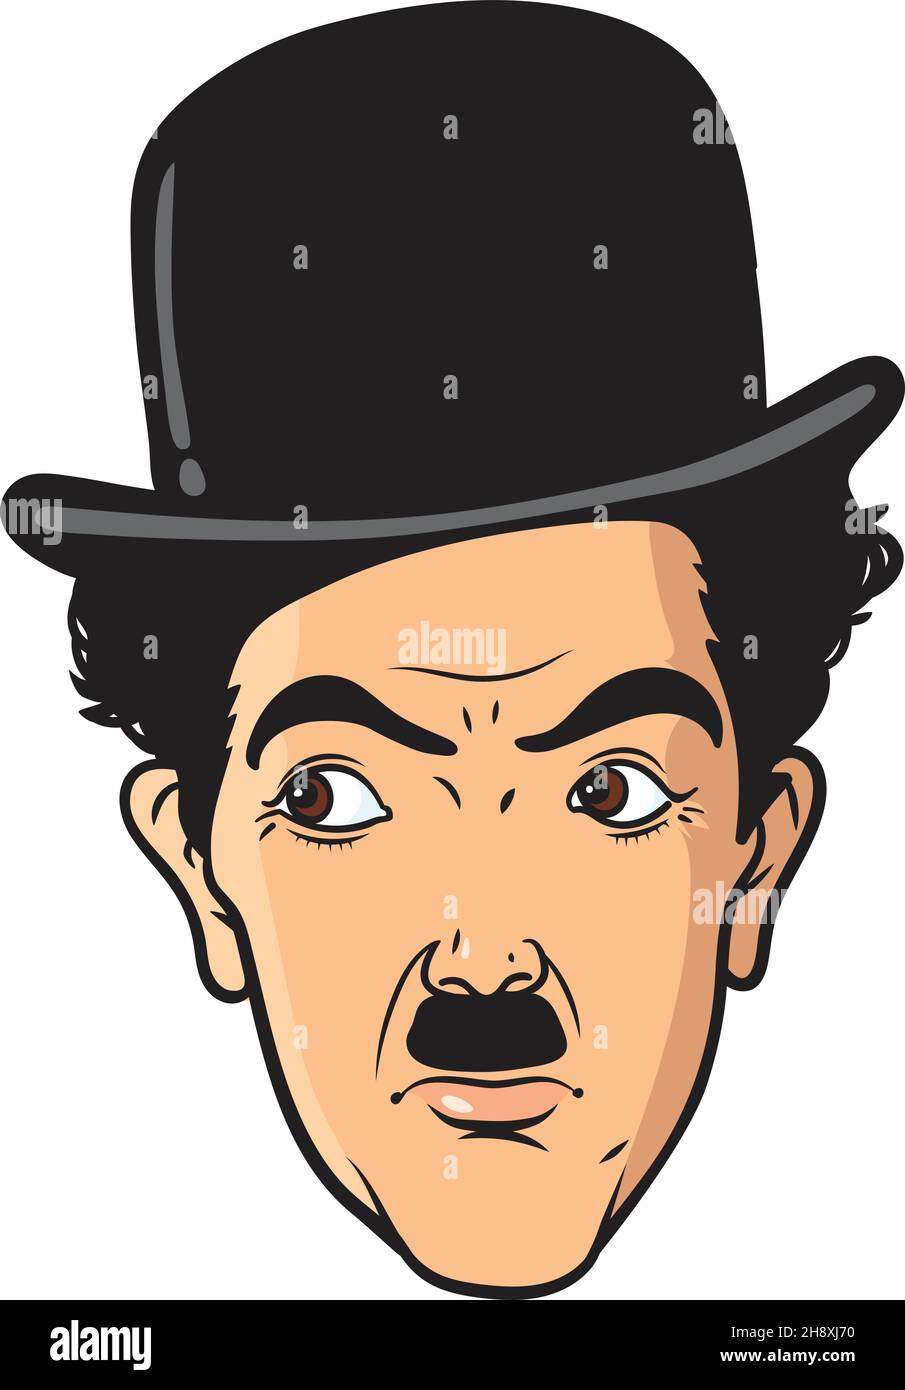 Portrait de Charlie Chaplin en vecteur de dessin au trait.Il était un comédien anglais, réalisateur et compositeur qui a augmenté la renommée dans l'ère du silence Illustration de Vecteur